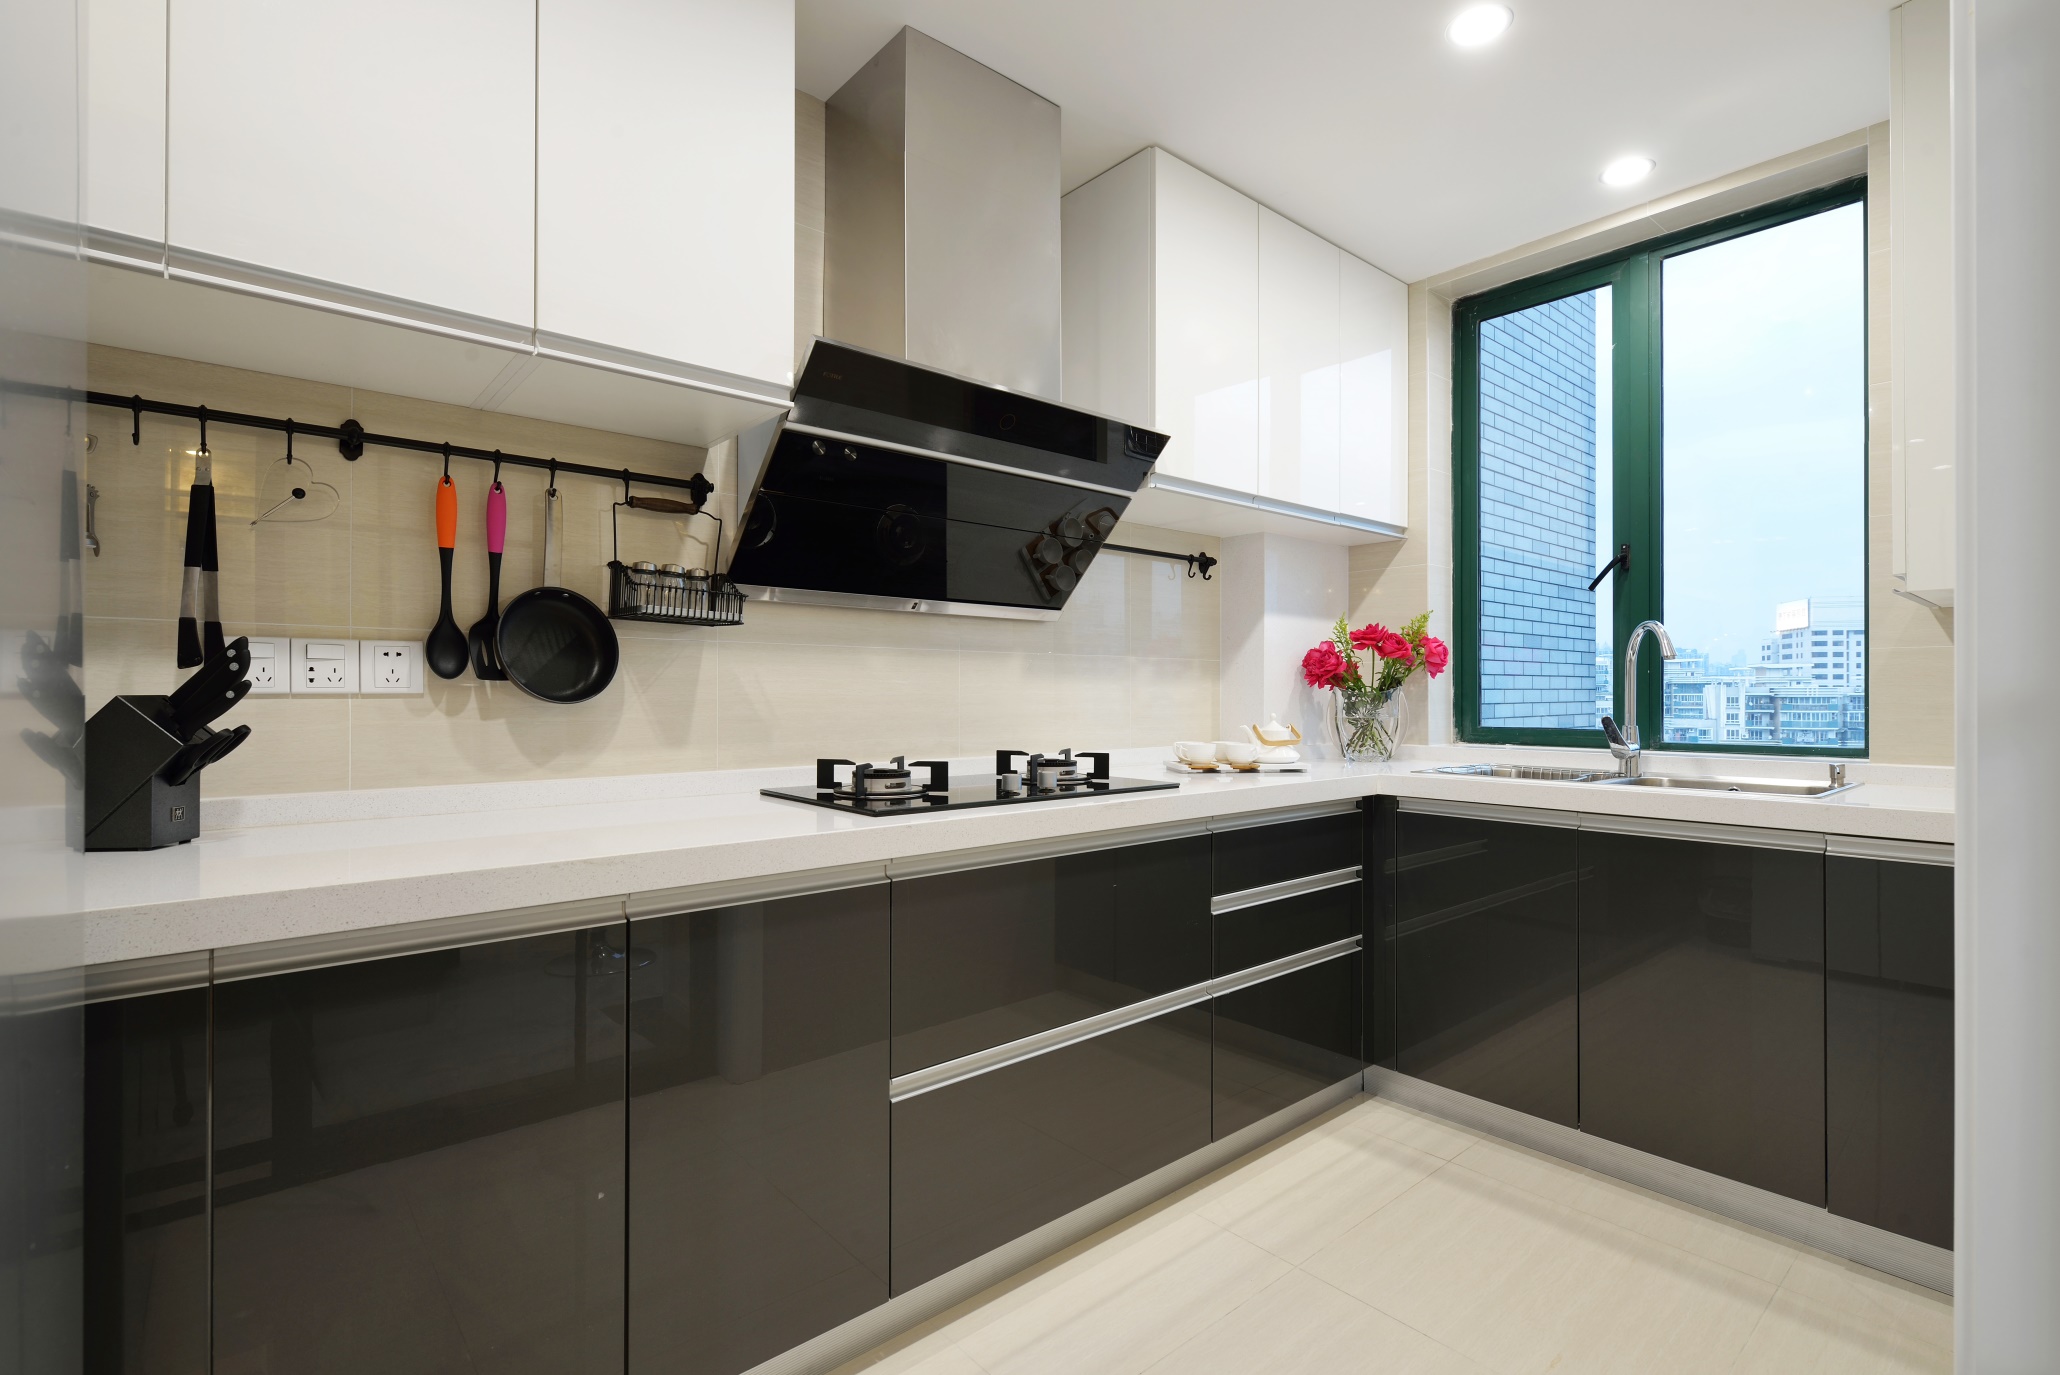 高级质感的橱柜搭配简雅的背景墙，使厨房空间典雅而舒适，凸显品质。